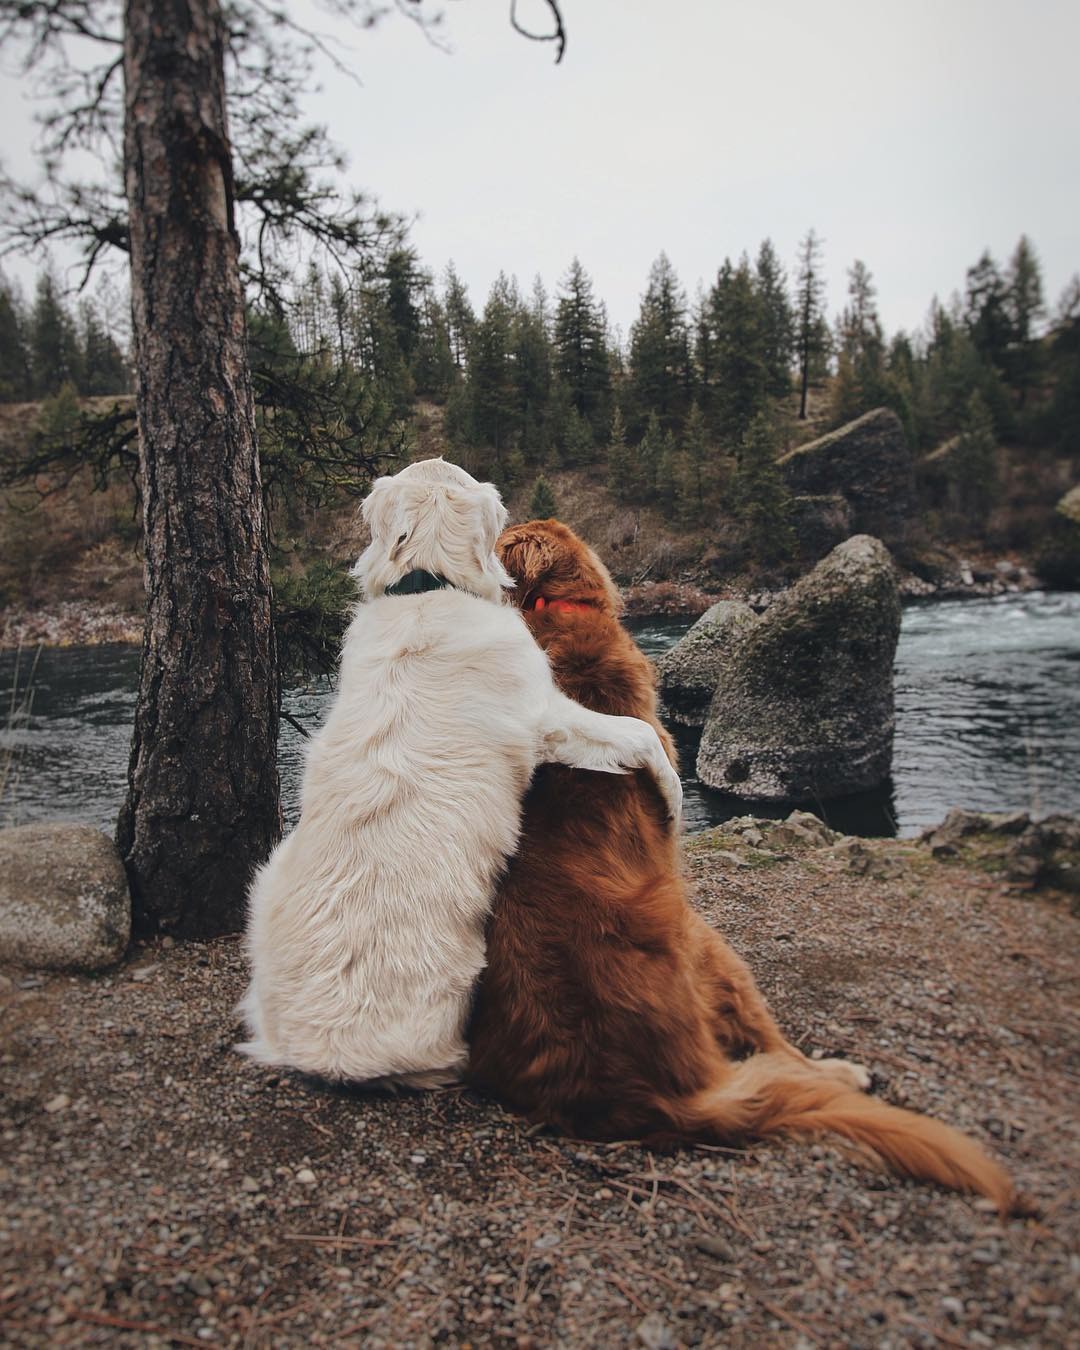 Không có gì đáng yêu hơn những chú chó ôm nhau, và bộ sưu tập ảnh này chắc chắn khiến bạn cảm thấy vui vẻ và đầy hy vọng. Hãy thưởng thức và chia sẻ những hình ảnh này để lan tỏa tình yêu đến mọi người.